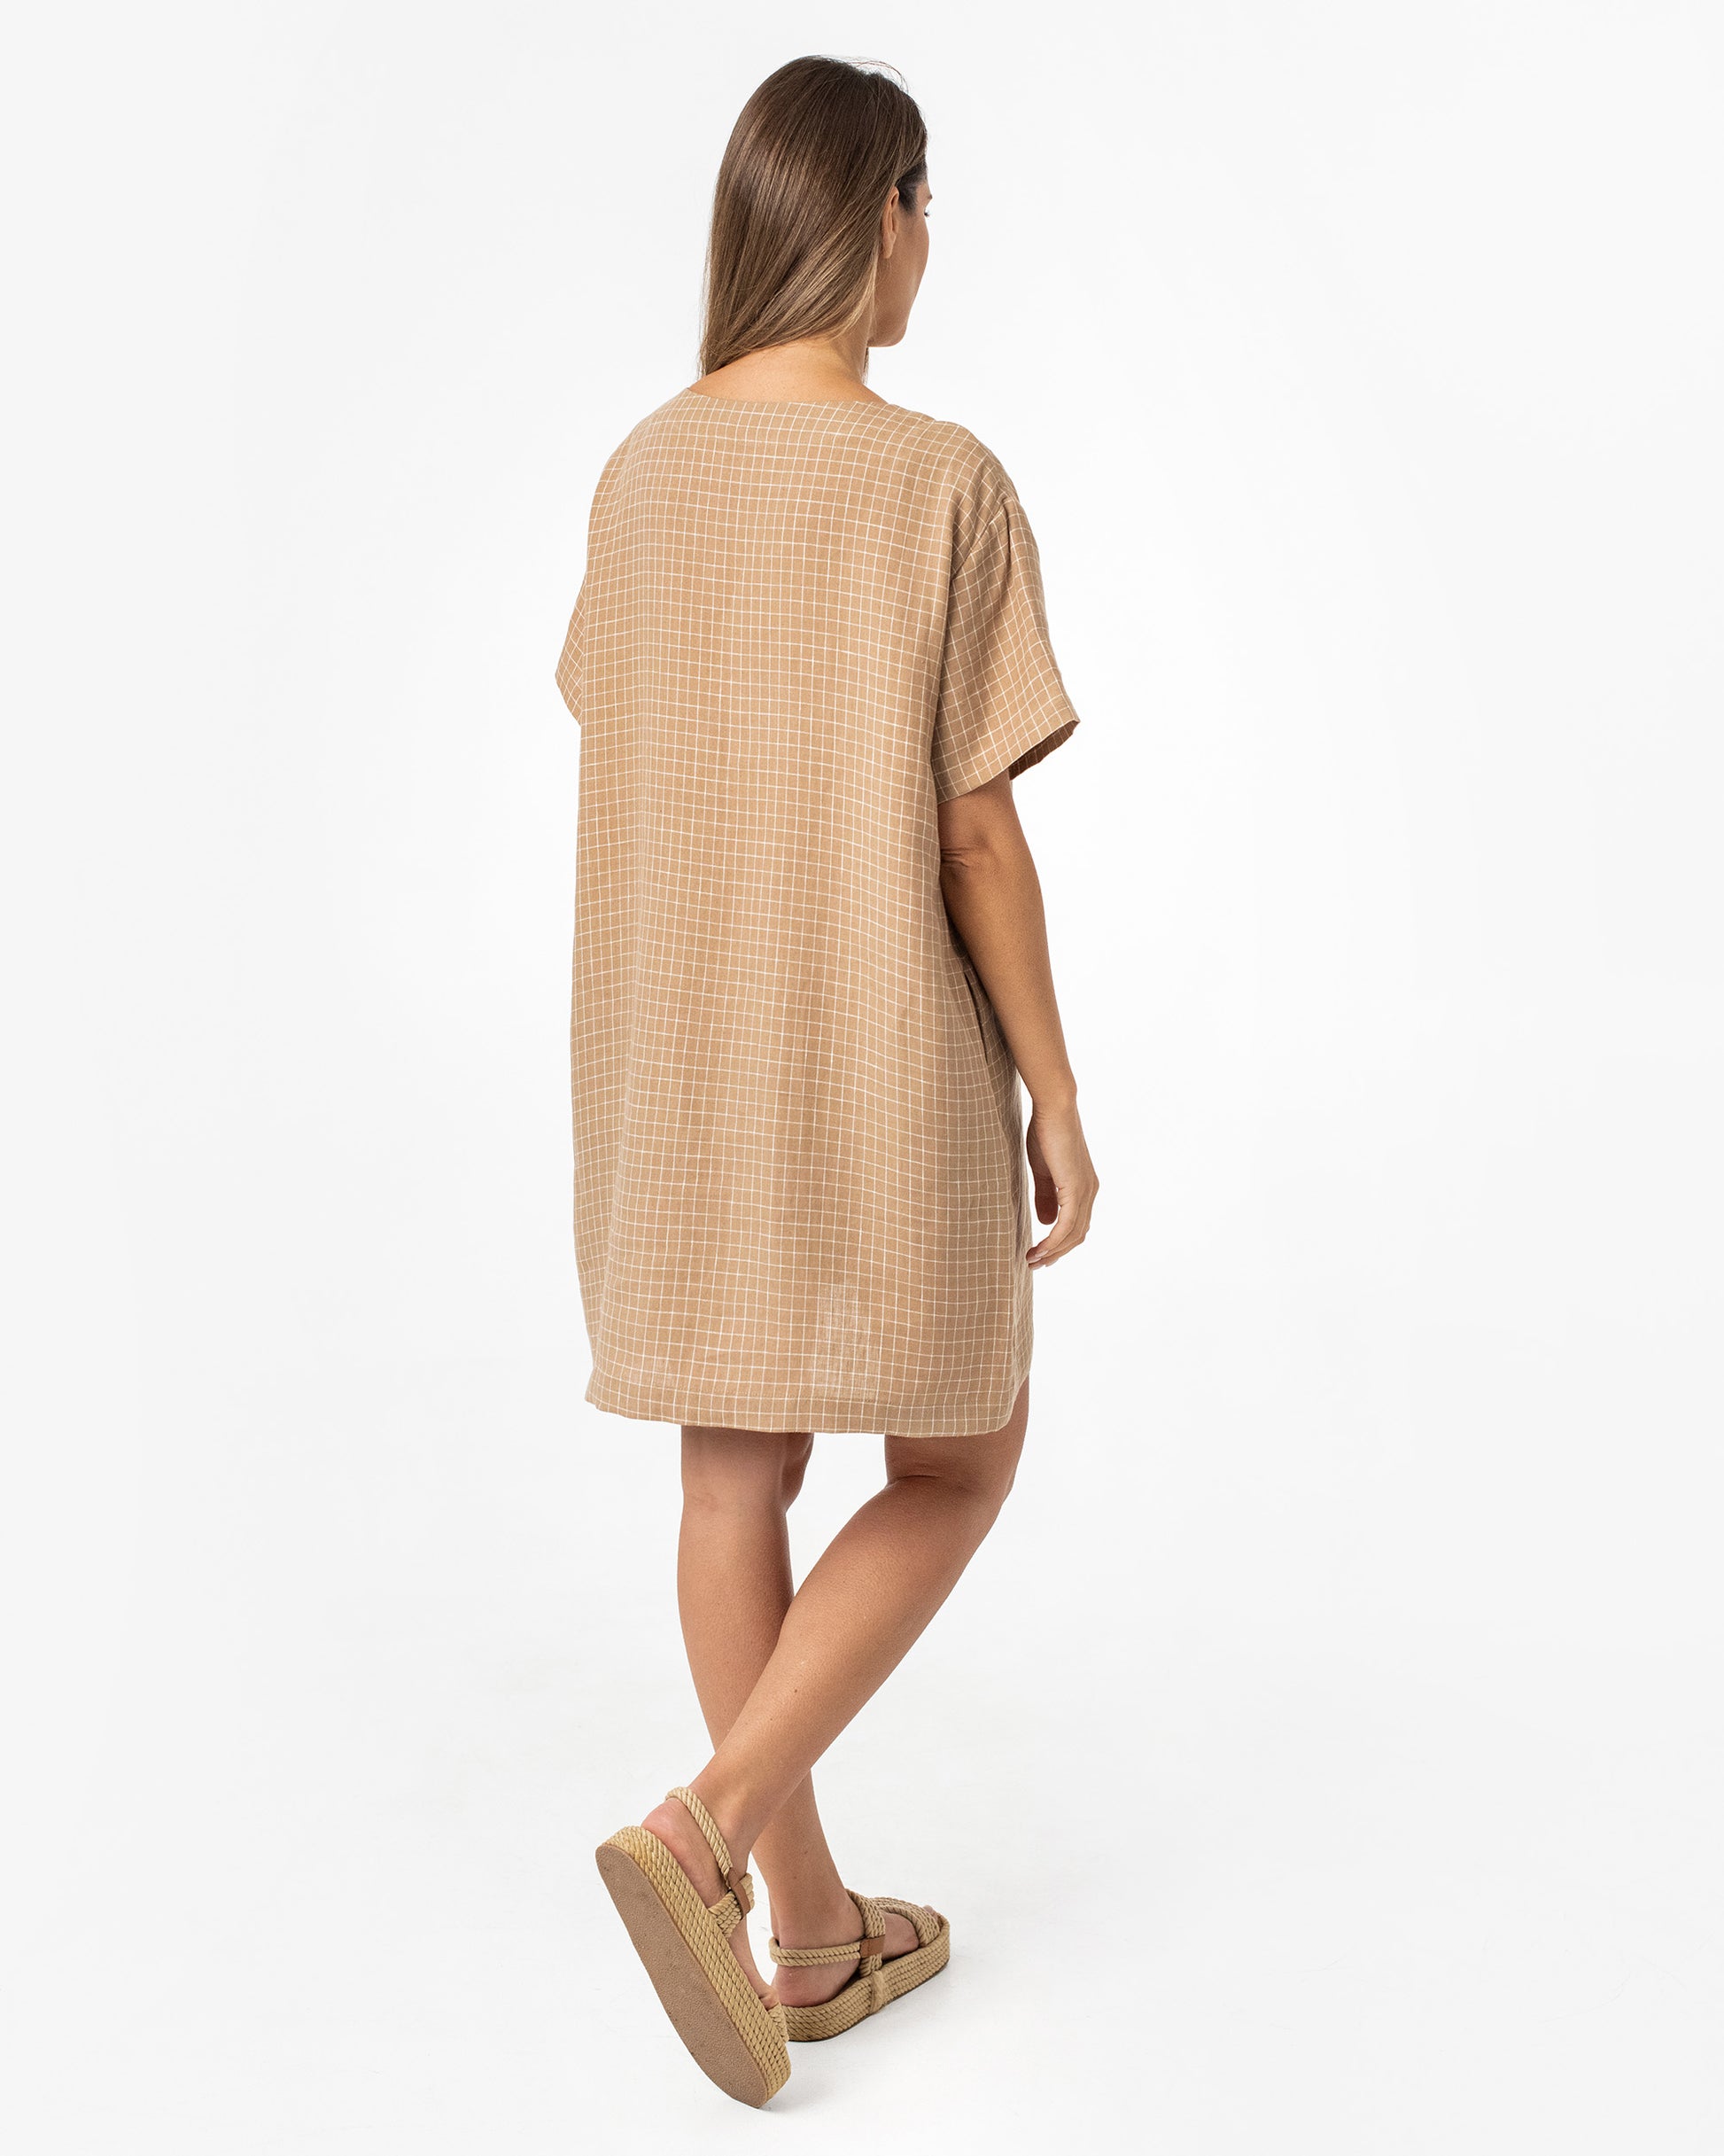 T-shirt linen dress MIJAS in Brown windowpane - MagicLinen